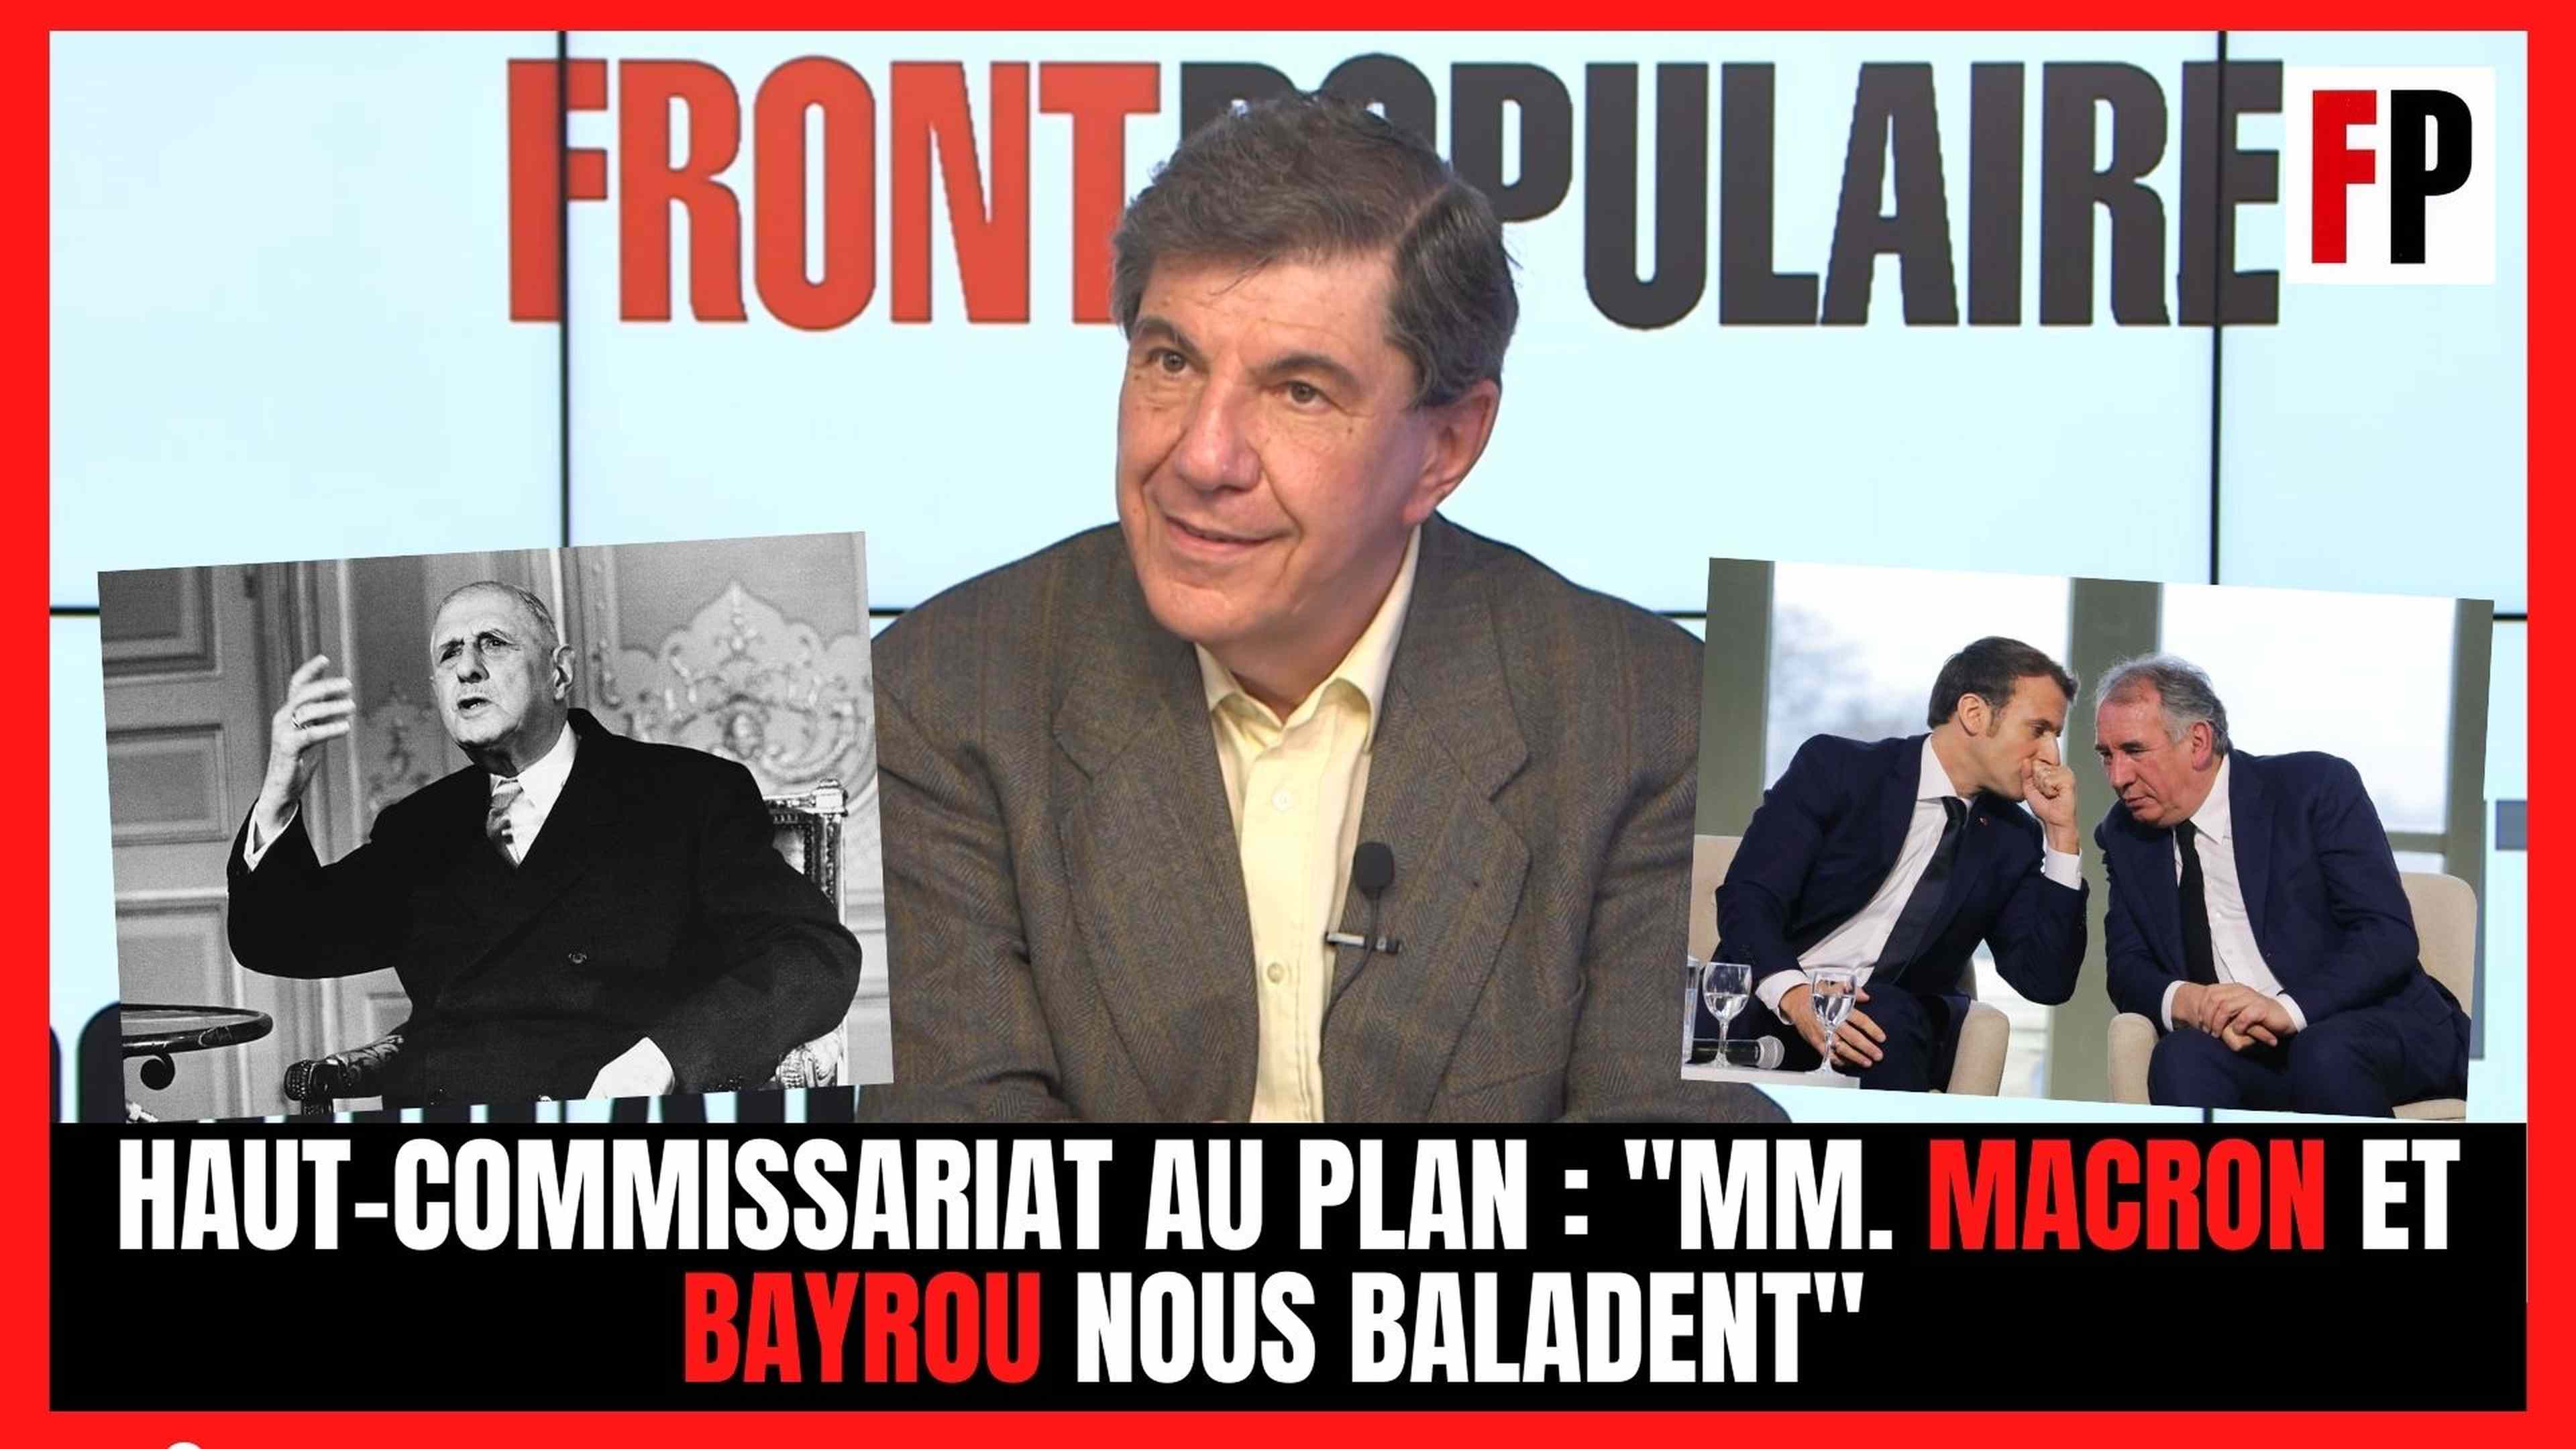 Haut-commissariat au plan : "MM. Macron et Bayrou nous baladent"